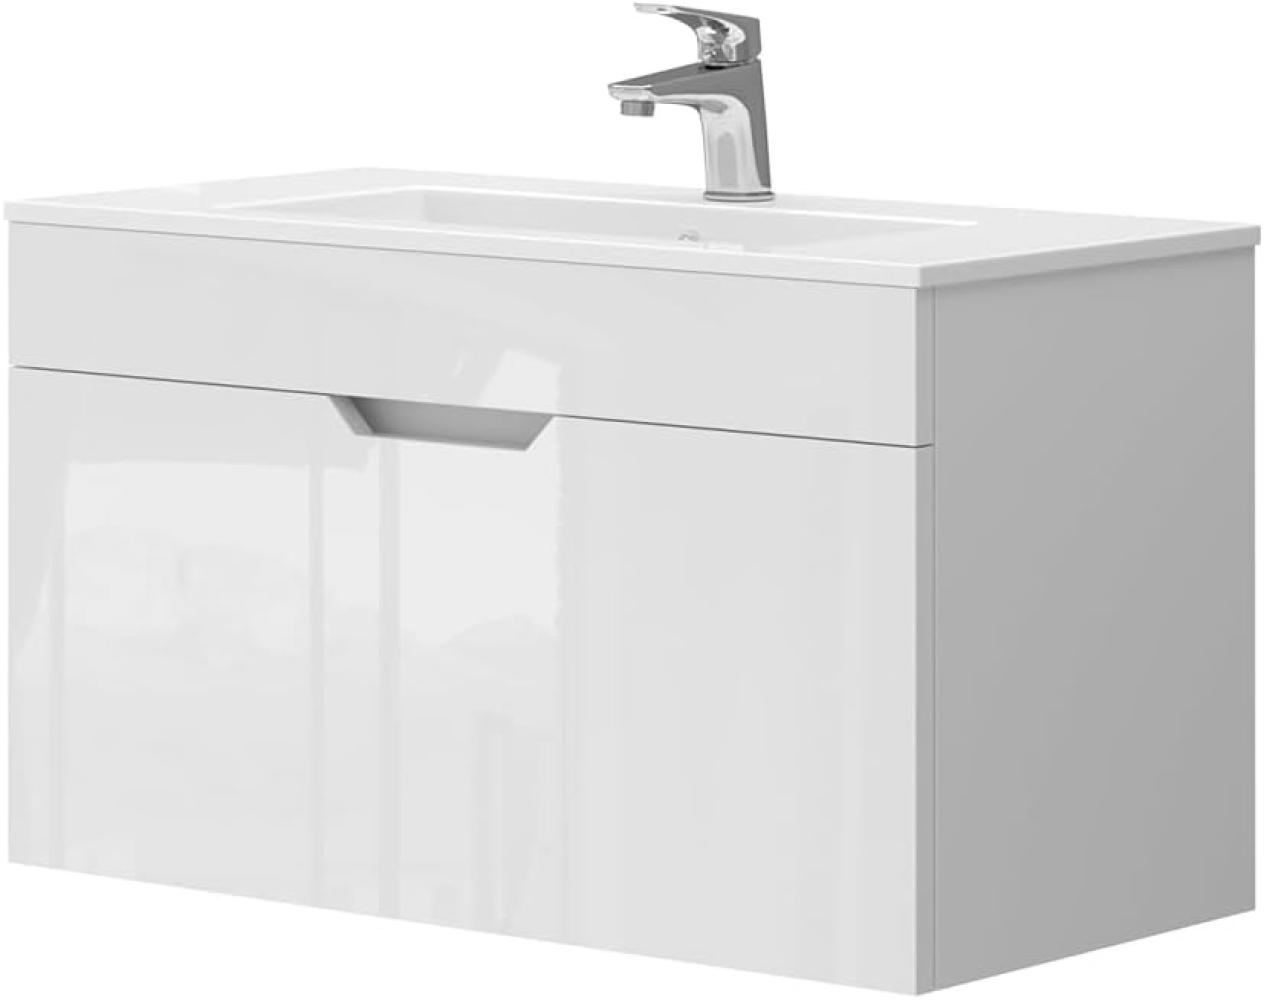 Vicco Waschbecken mit Unterschrank Stefania 80 cm breit, Waschtisch hängend Weiß Bild 1